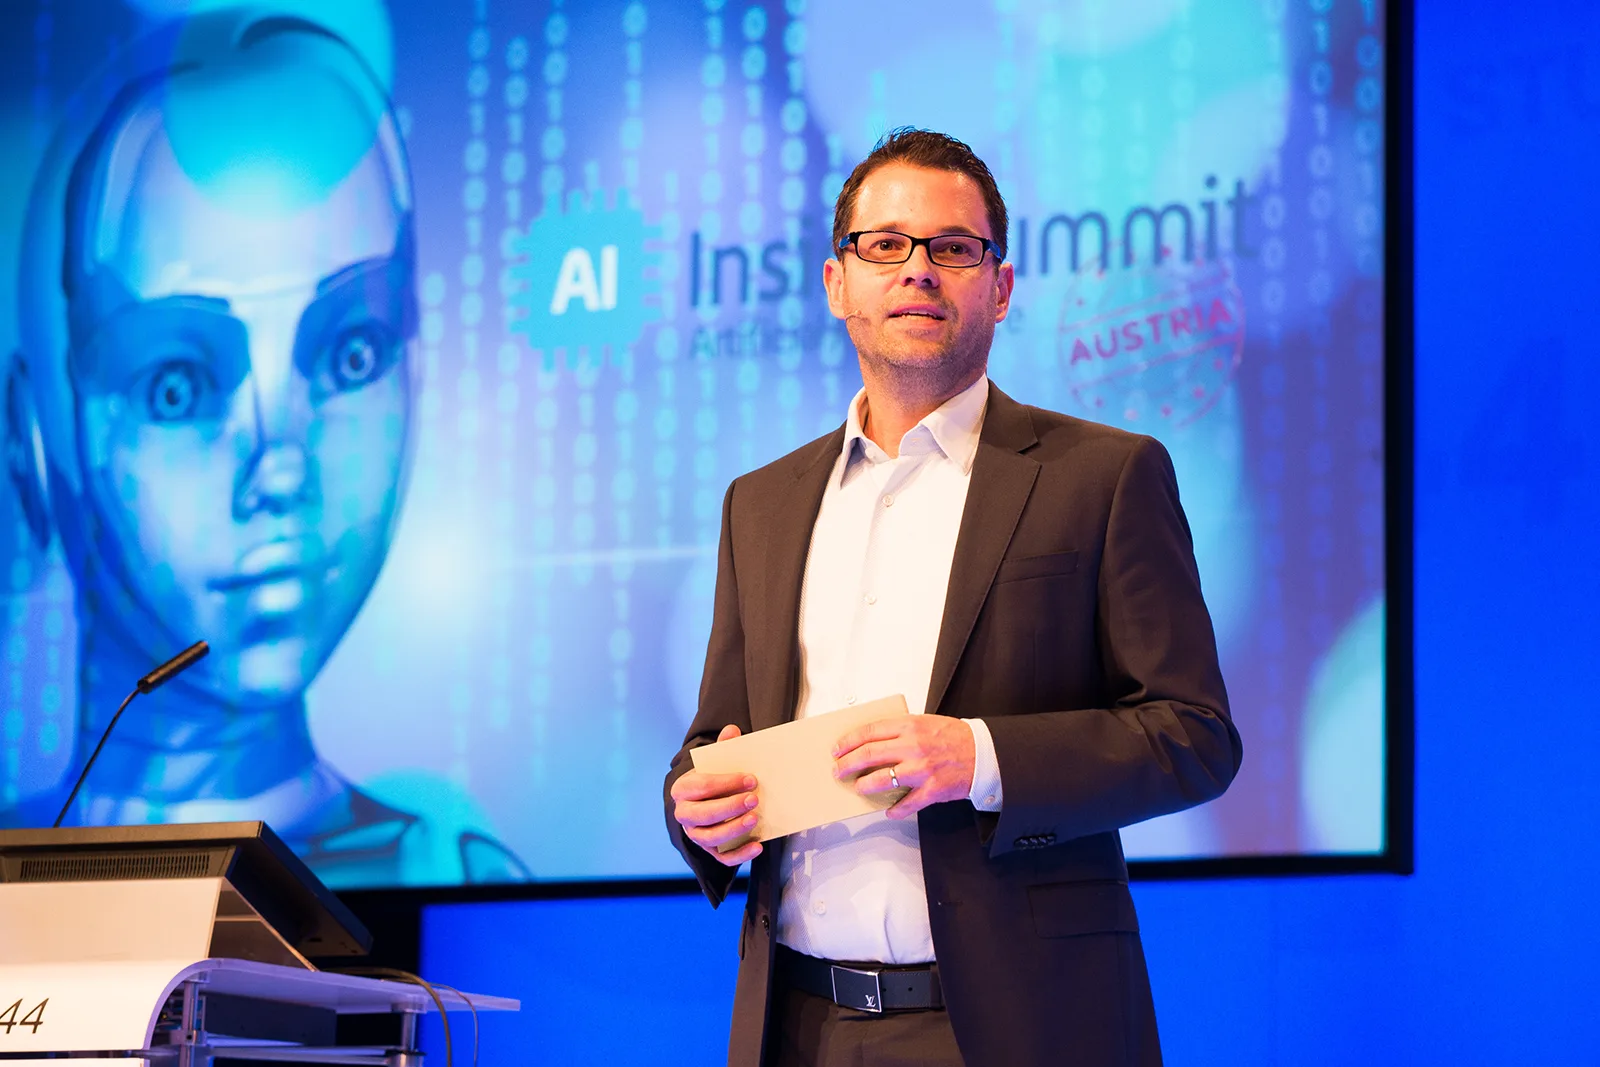 Speaker auf der Bühne beim AI Inside Summit